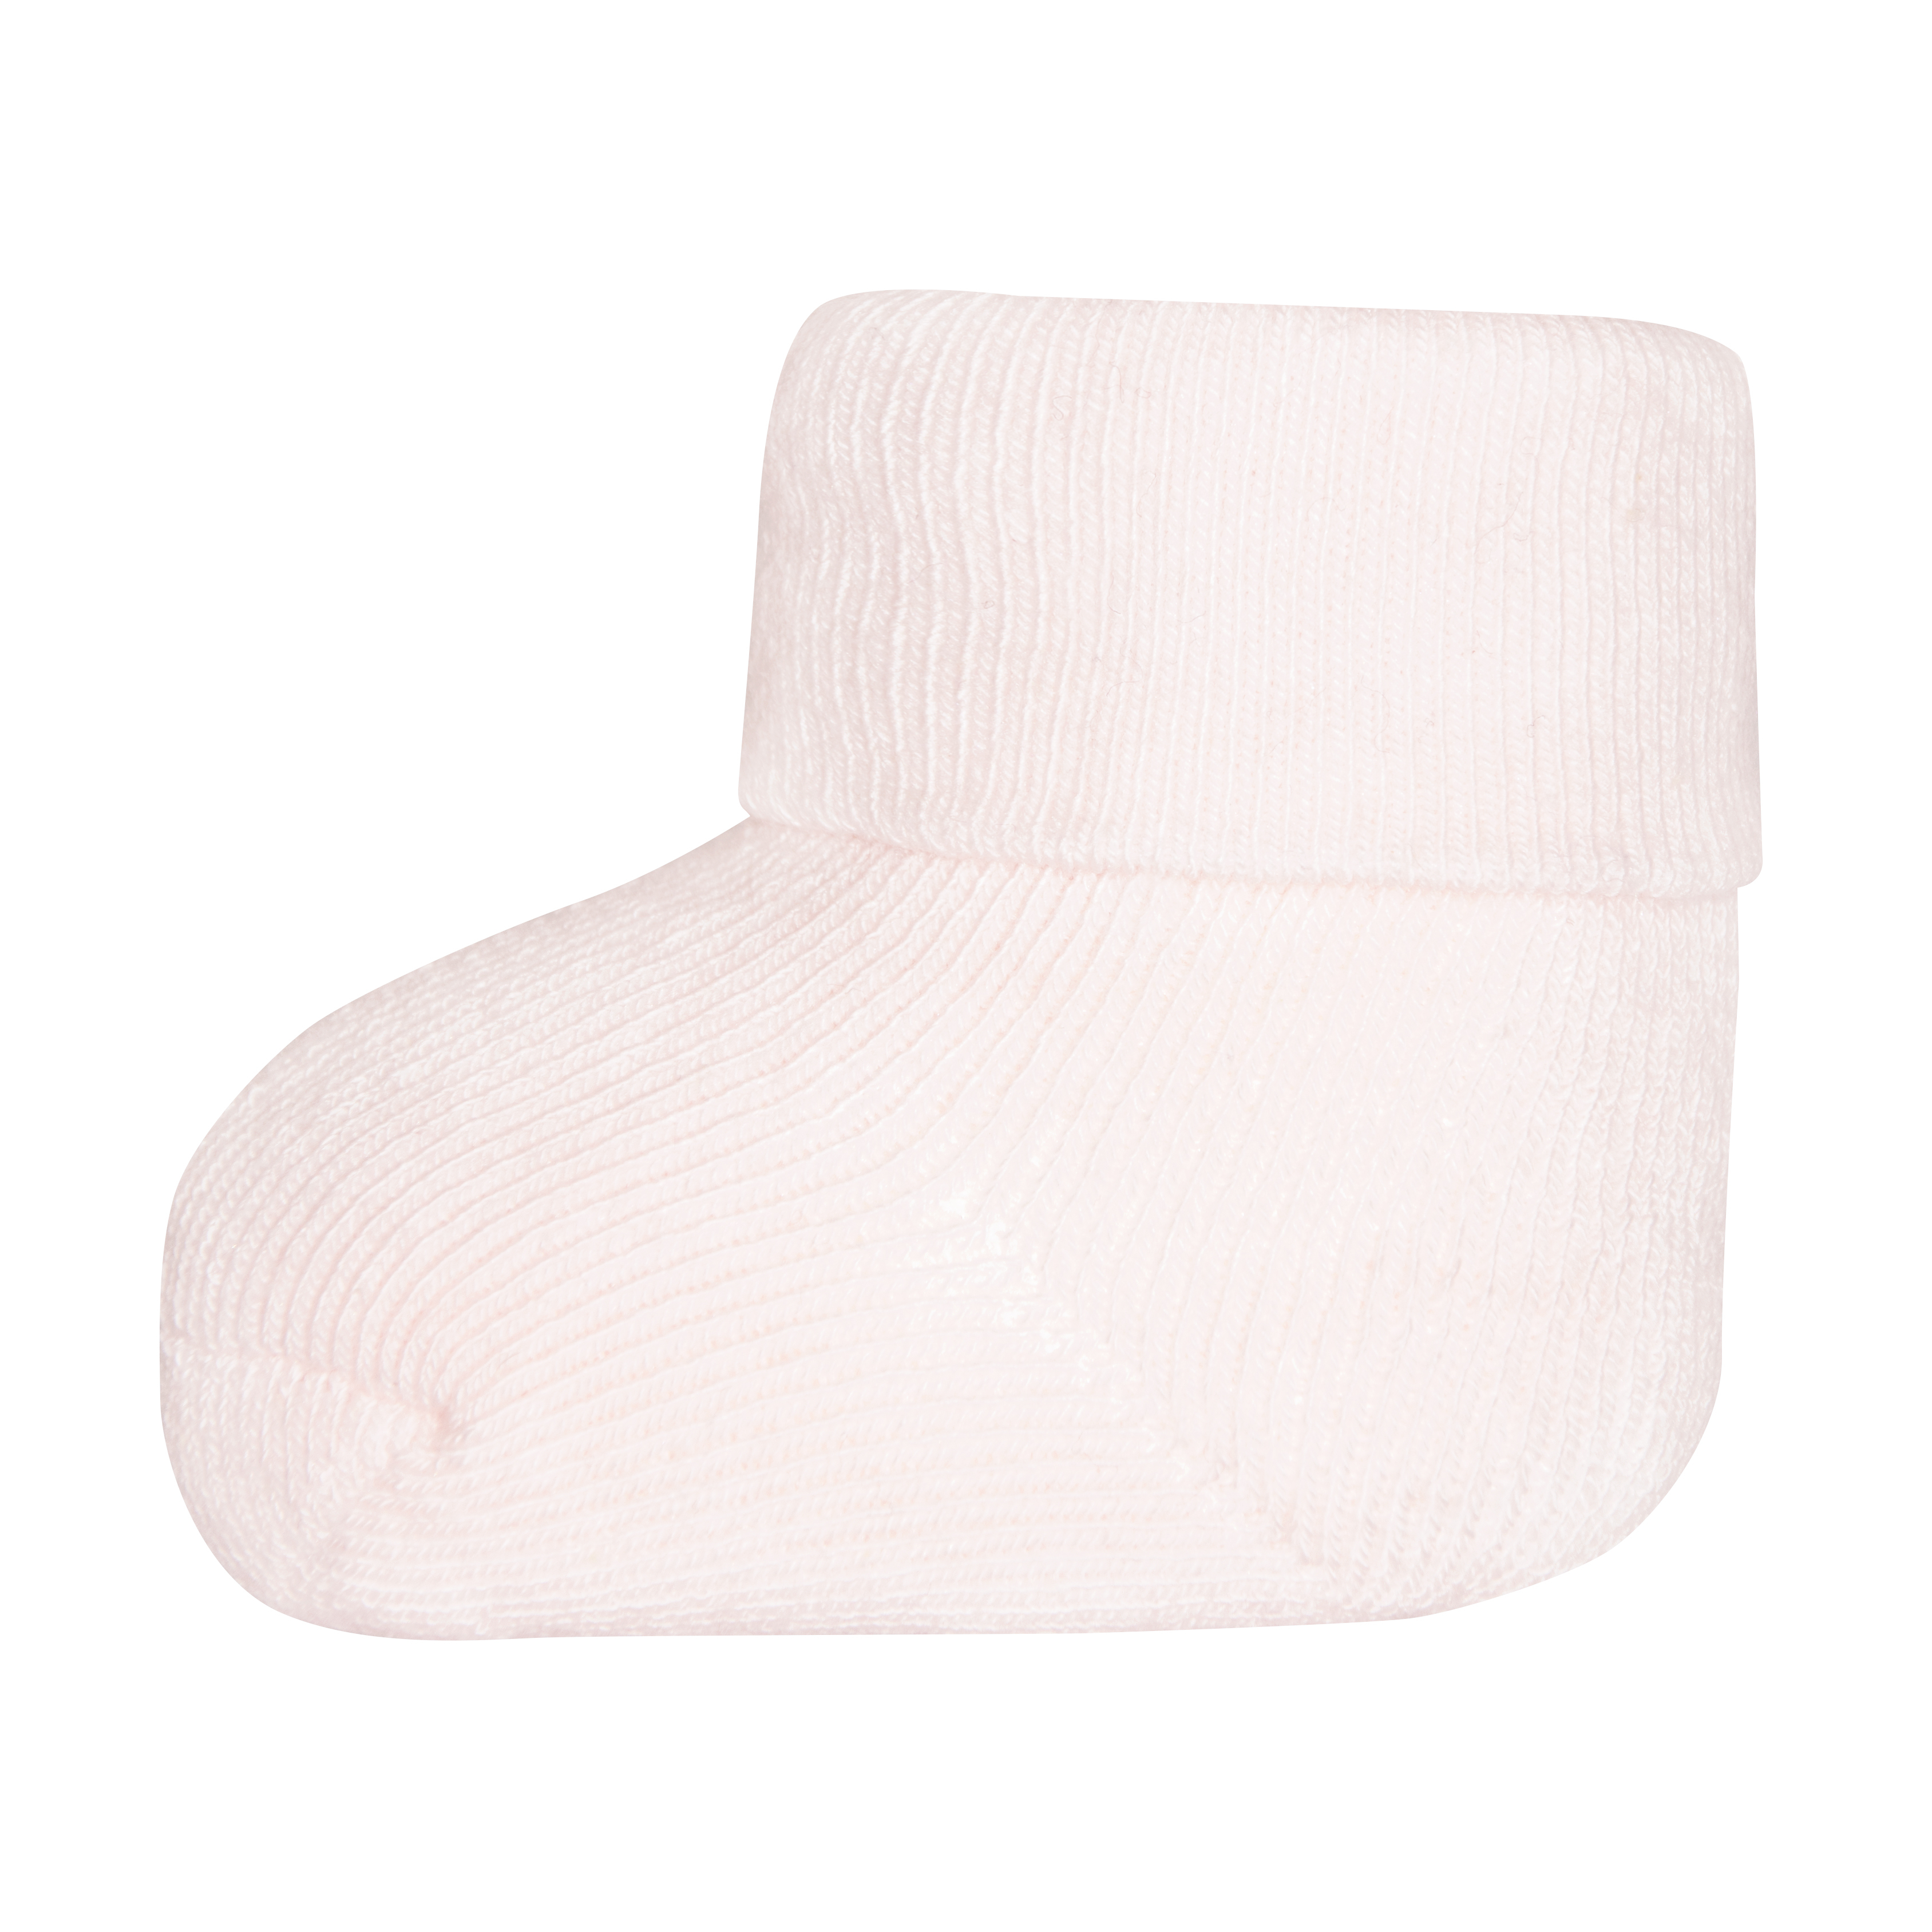 Mädchen Erstlings-Socken (Dreierpack) Weiß Blümchen Ringel